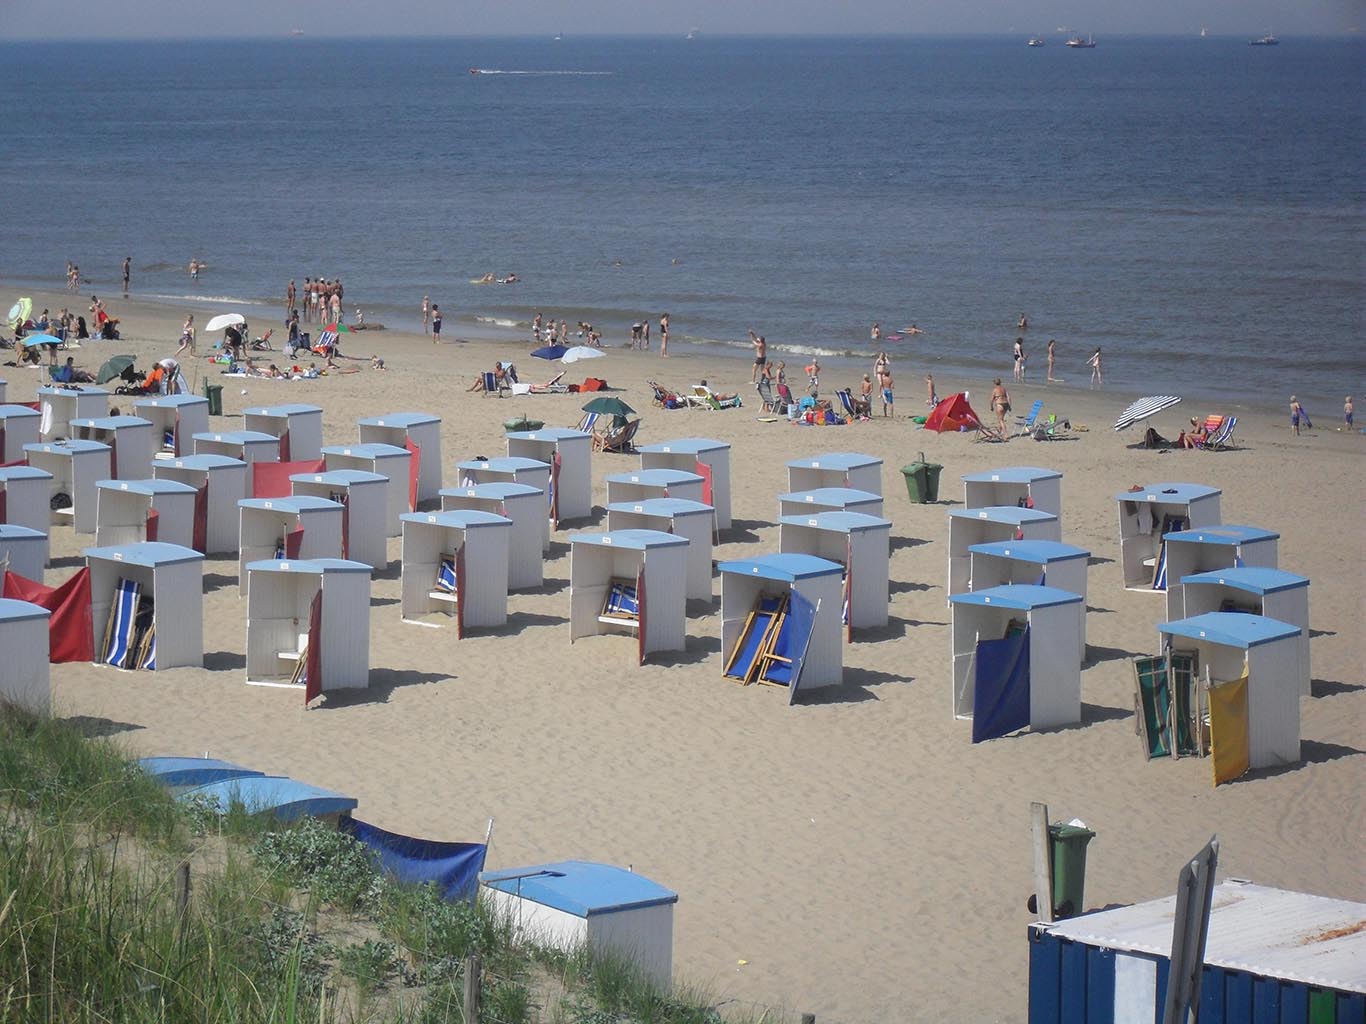 Holandsko má zhruba 60 km pobřeží, kde lze najít také pěkné písečné pláže